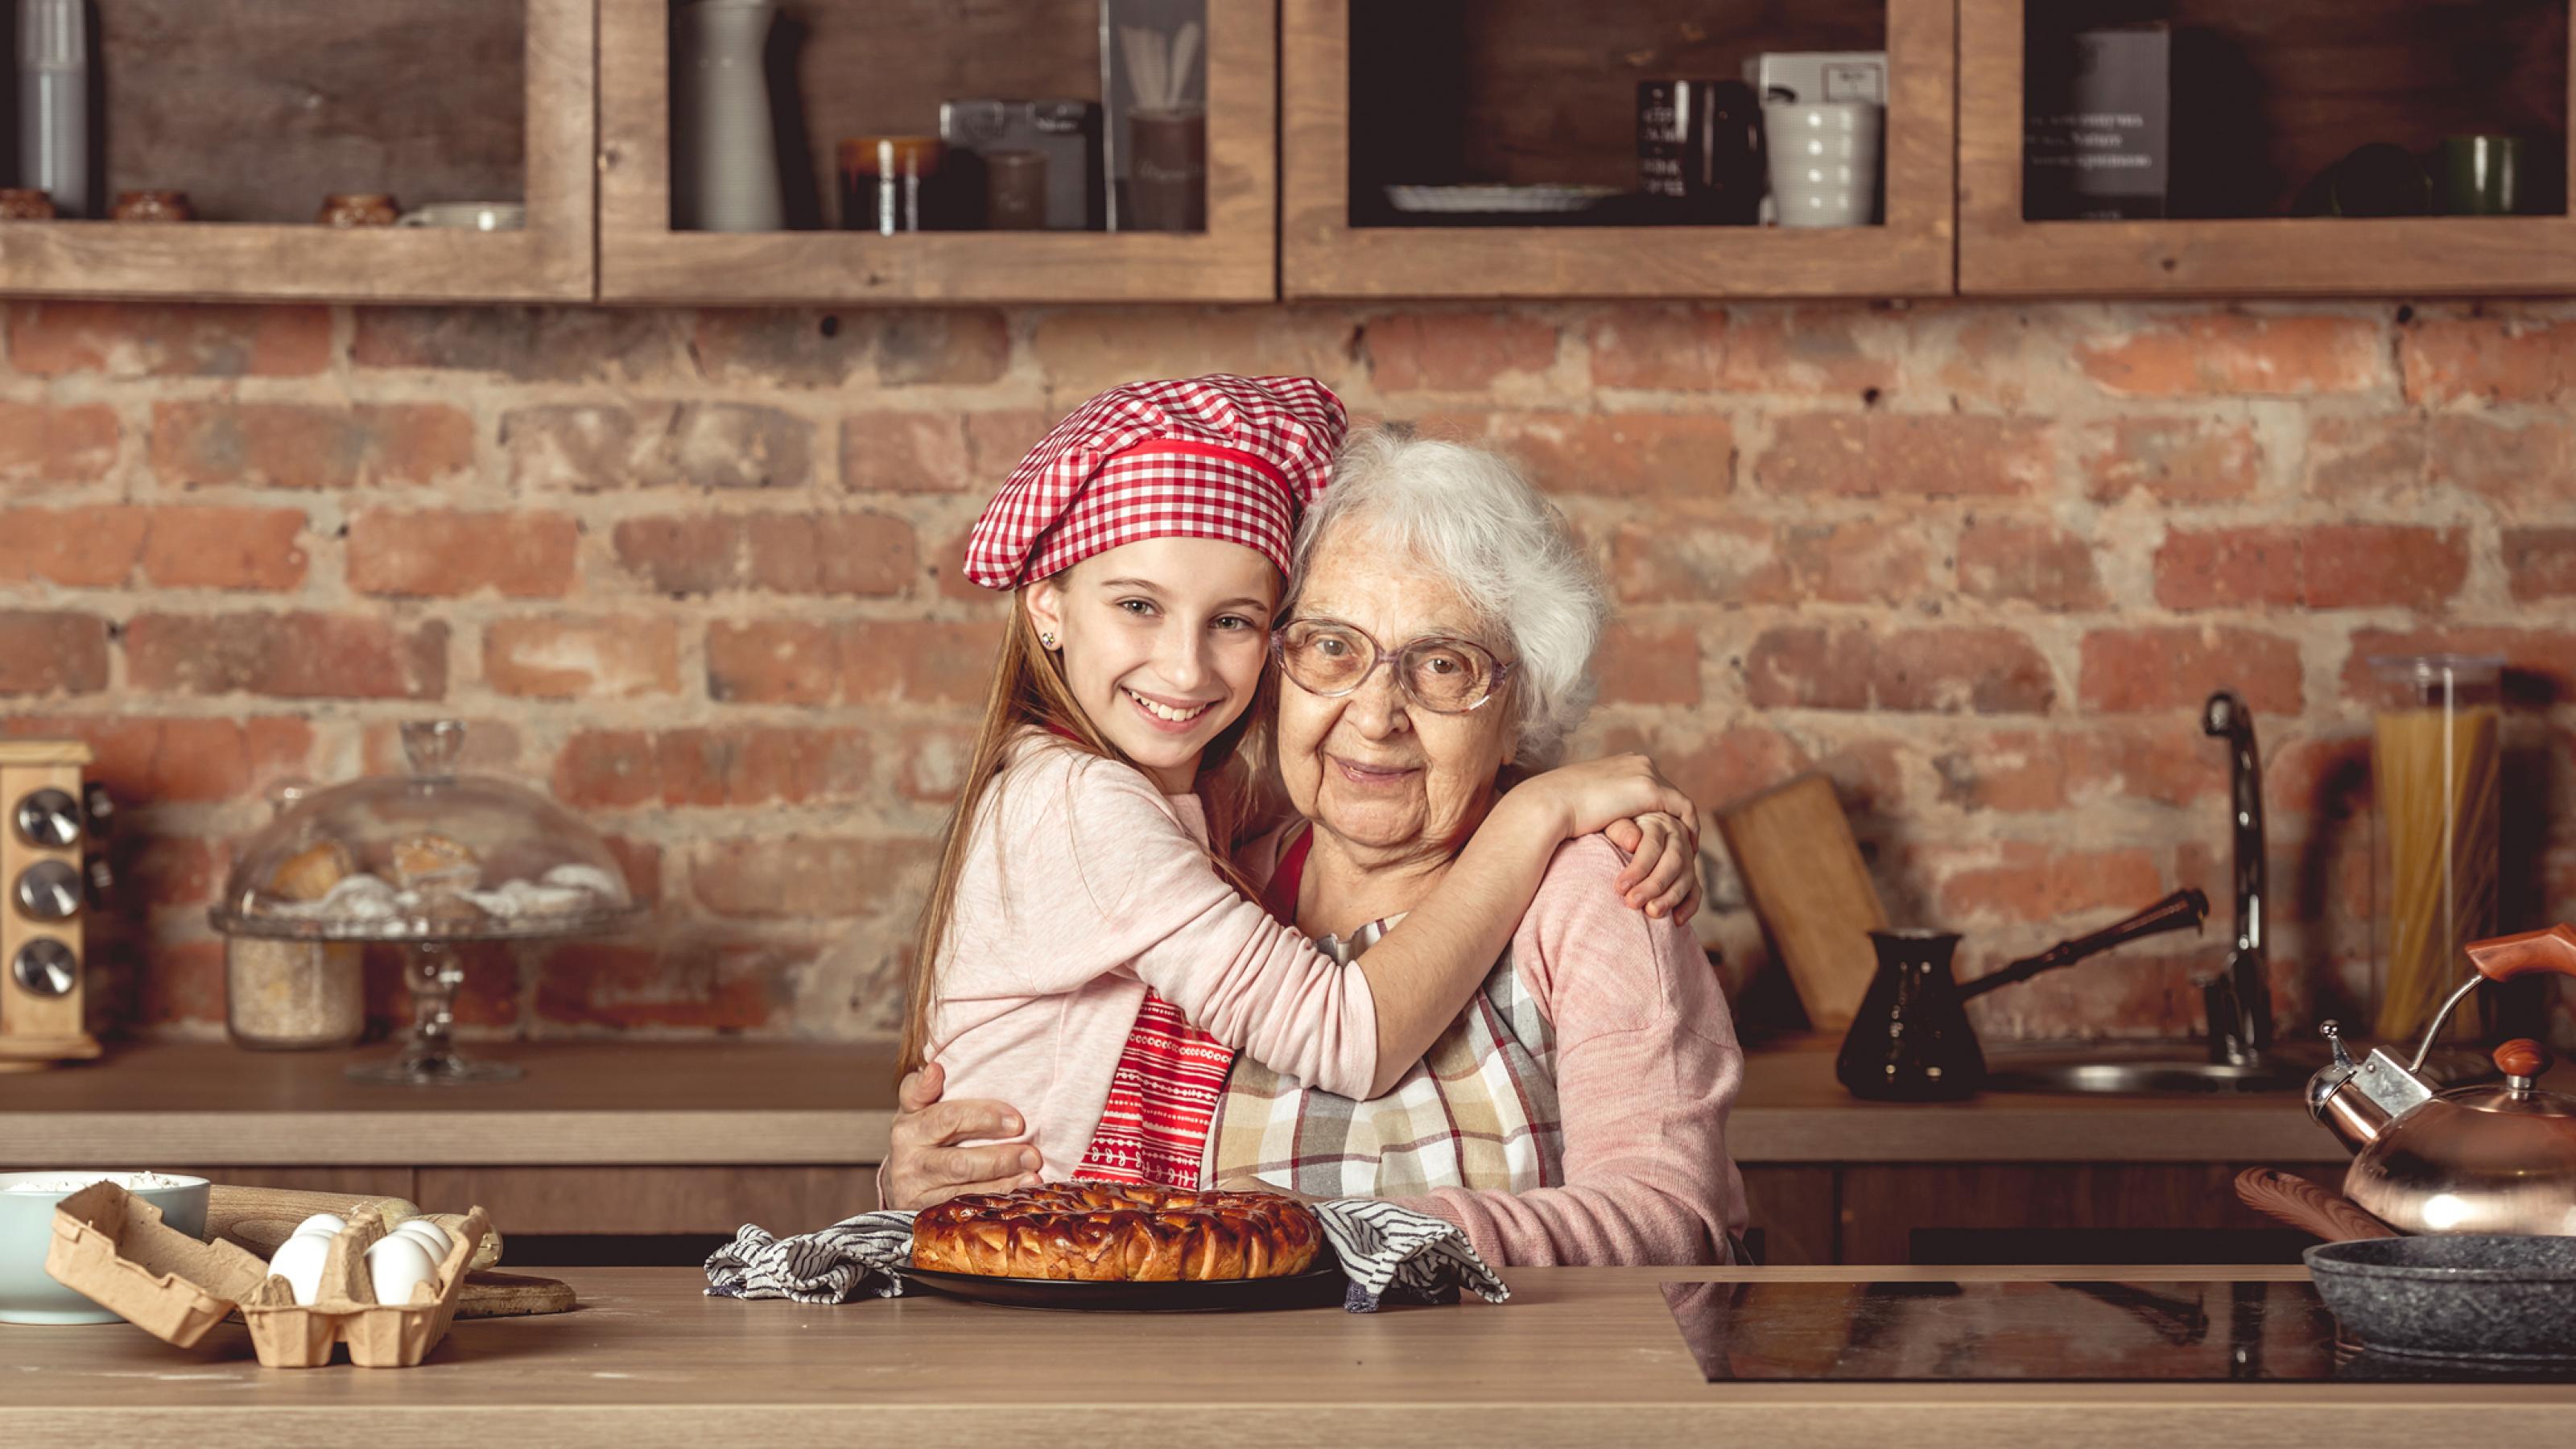 Das Foto zeigt eine weißhaarige, alte Frau mit Küchenschürze, die von einem lächelnden jungen Mädchen mit rot-weiß-karierter Kochmütze umarmt wird. Vor ihnen ein Gebäck. Sie befinden sich in einer altertümlichen Küche, hinter sich eine unverputzte Mauer aus roten Ziegelsteinen mit Ablage und Hängeschränken.